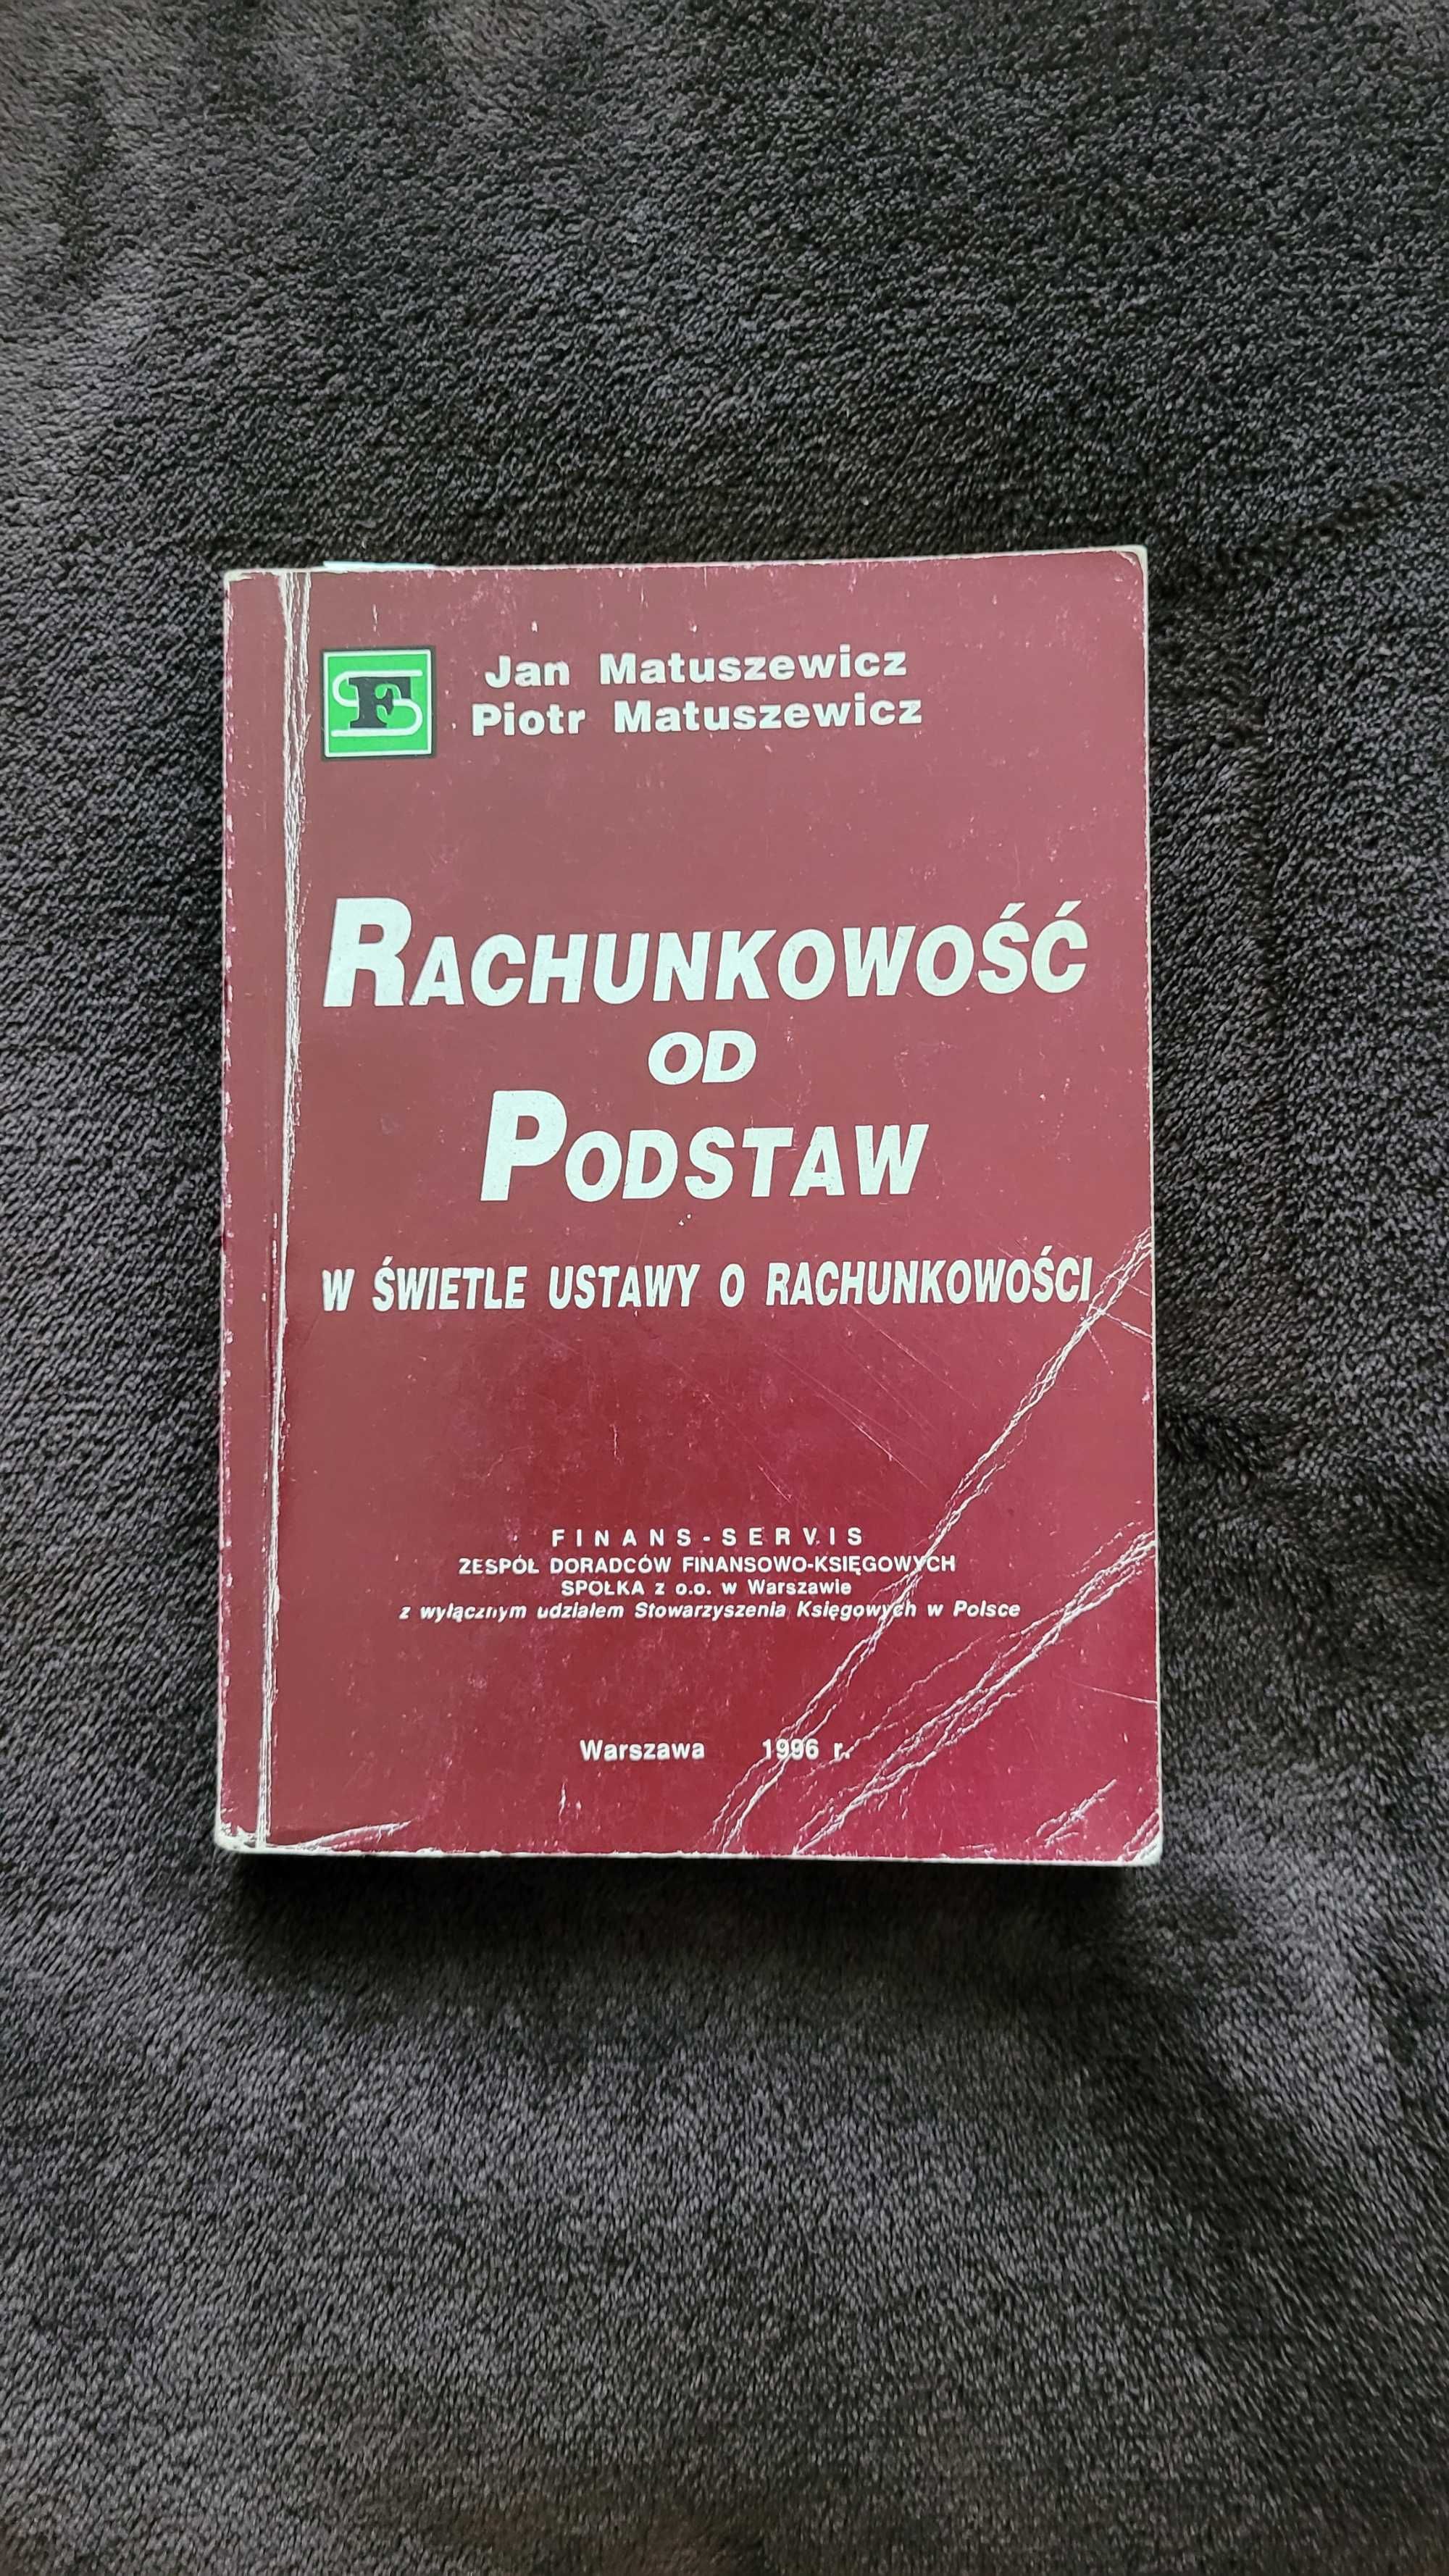 "Rachunkowość od podstaw", J. i P. Matuszewicz